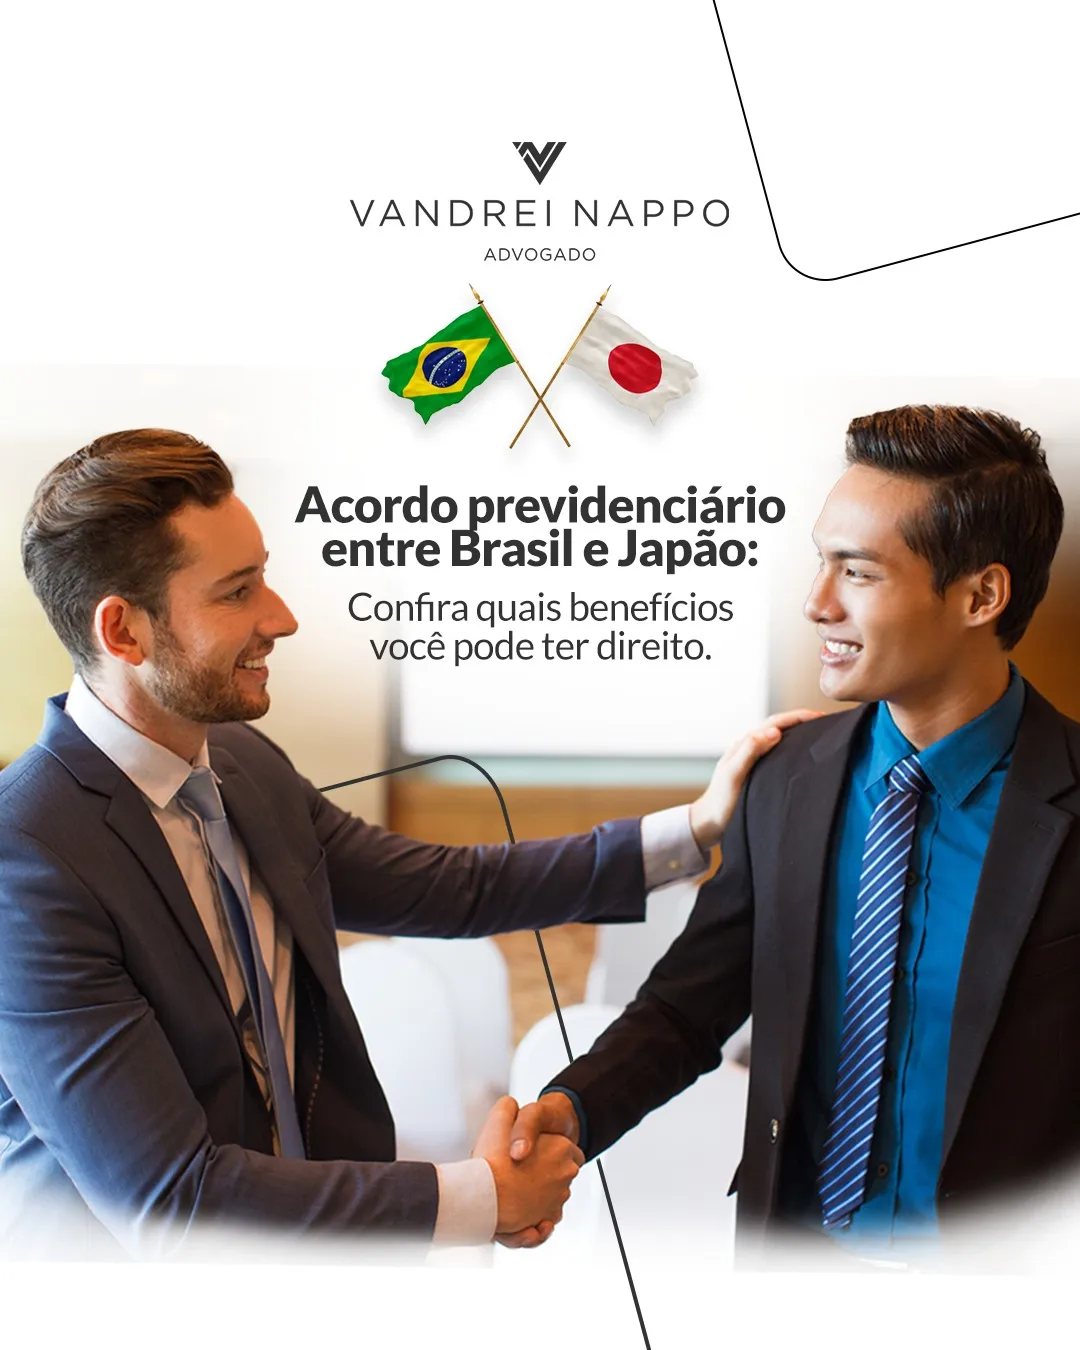 Acordo previdenciário entre Brasil e Japão: Confira quais benefícios você pode ter direito.